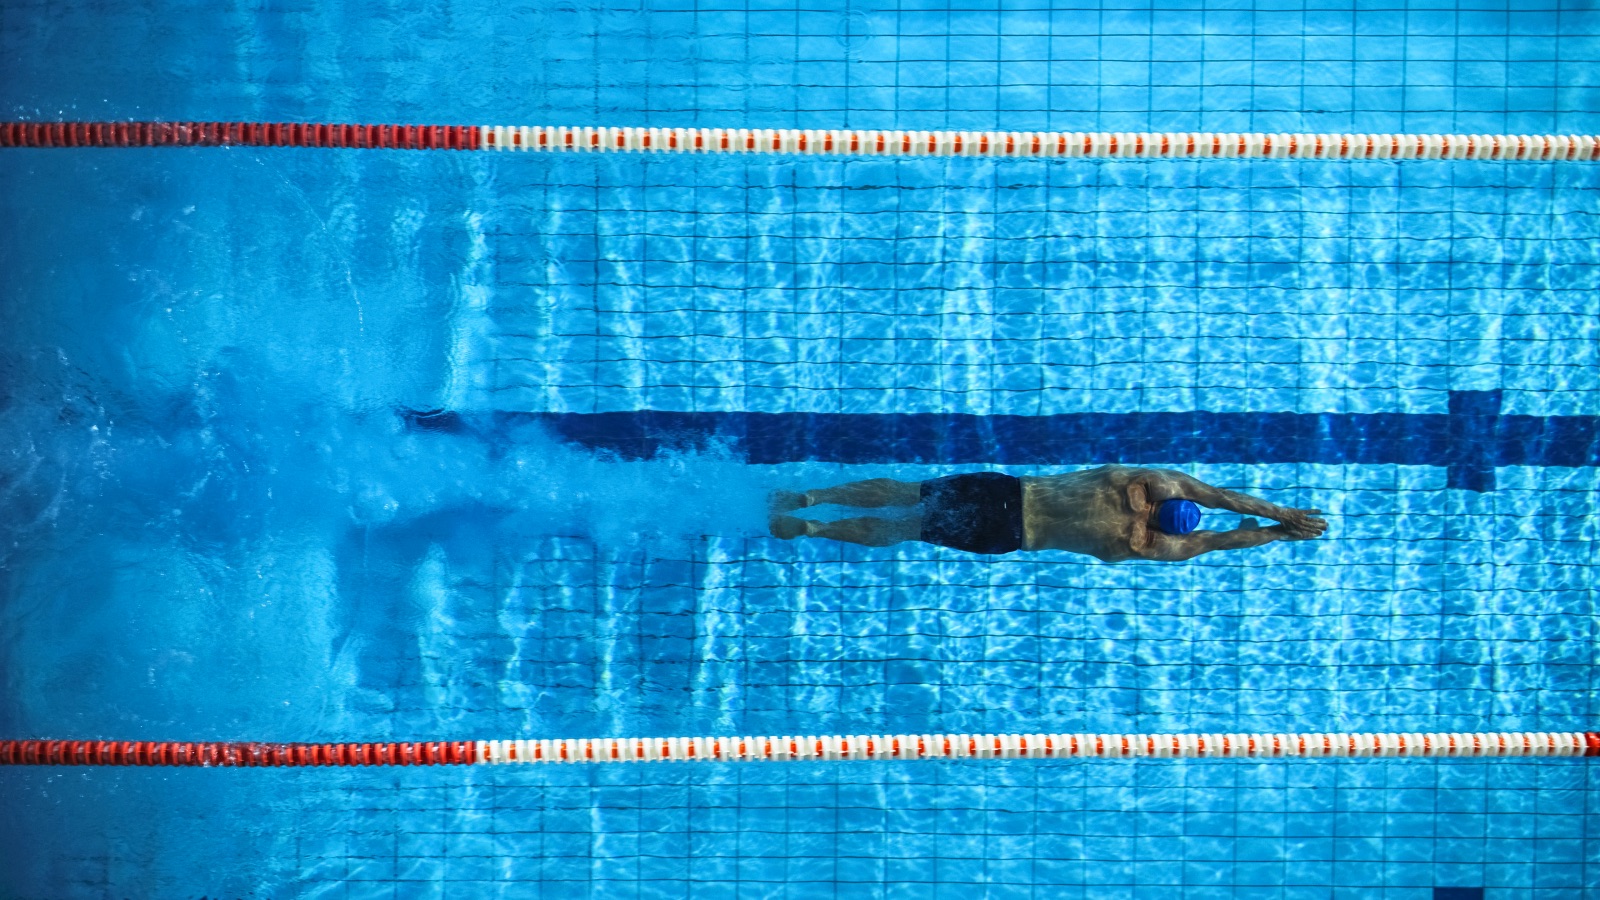 Tecnica di nuoto: consigli e trucchi per migliorarla